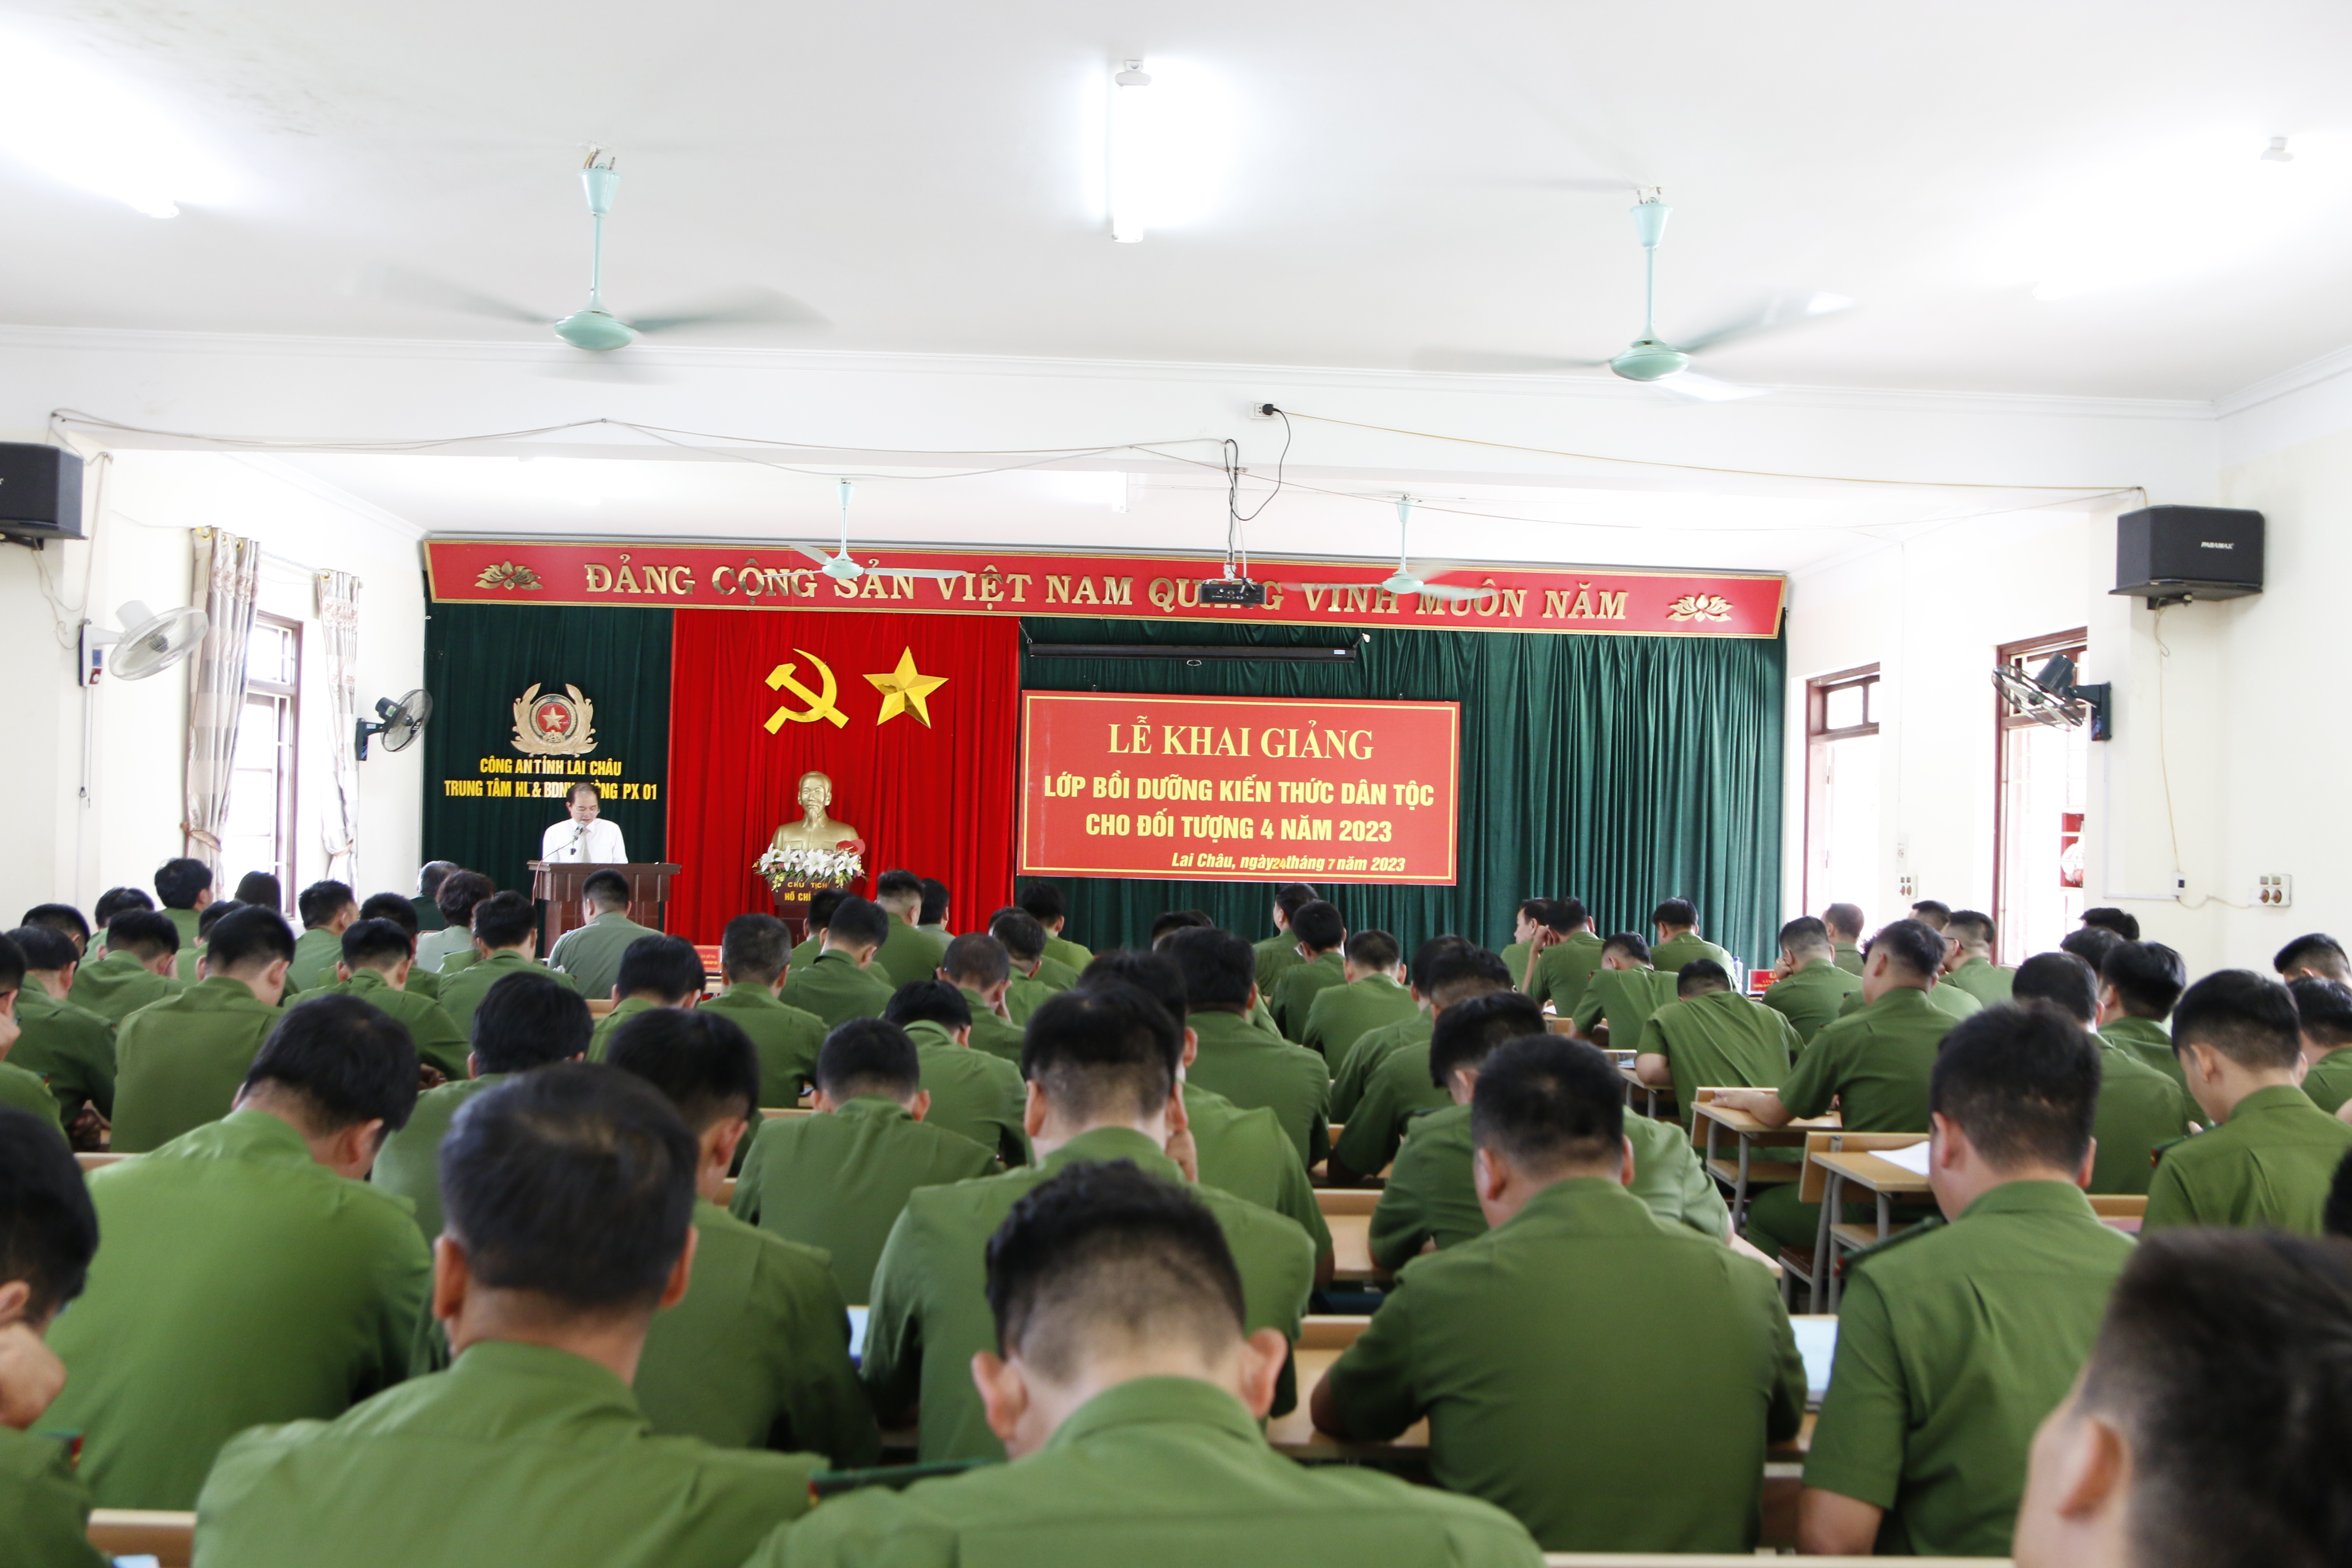 Đồng chí Nguyễn Văn Dũng – Giám đốc trung tâm bồi dưỡng kiến thức công tác dân tộc, Học viện dân tộc phát biểu tại lễ khai giảng 